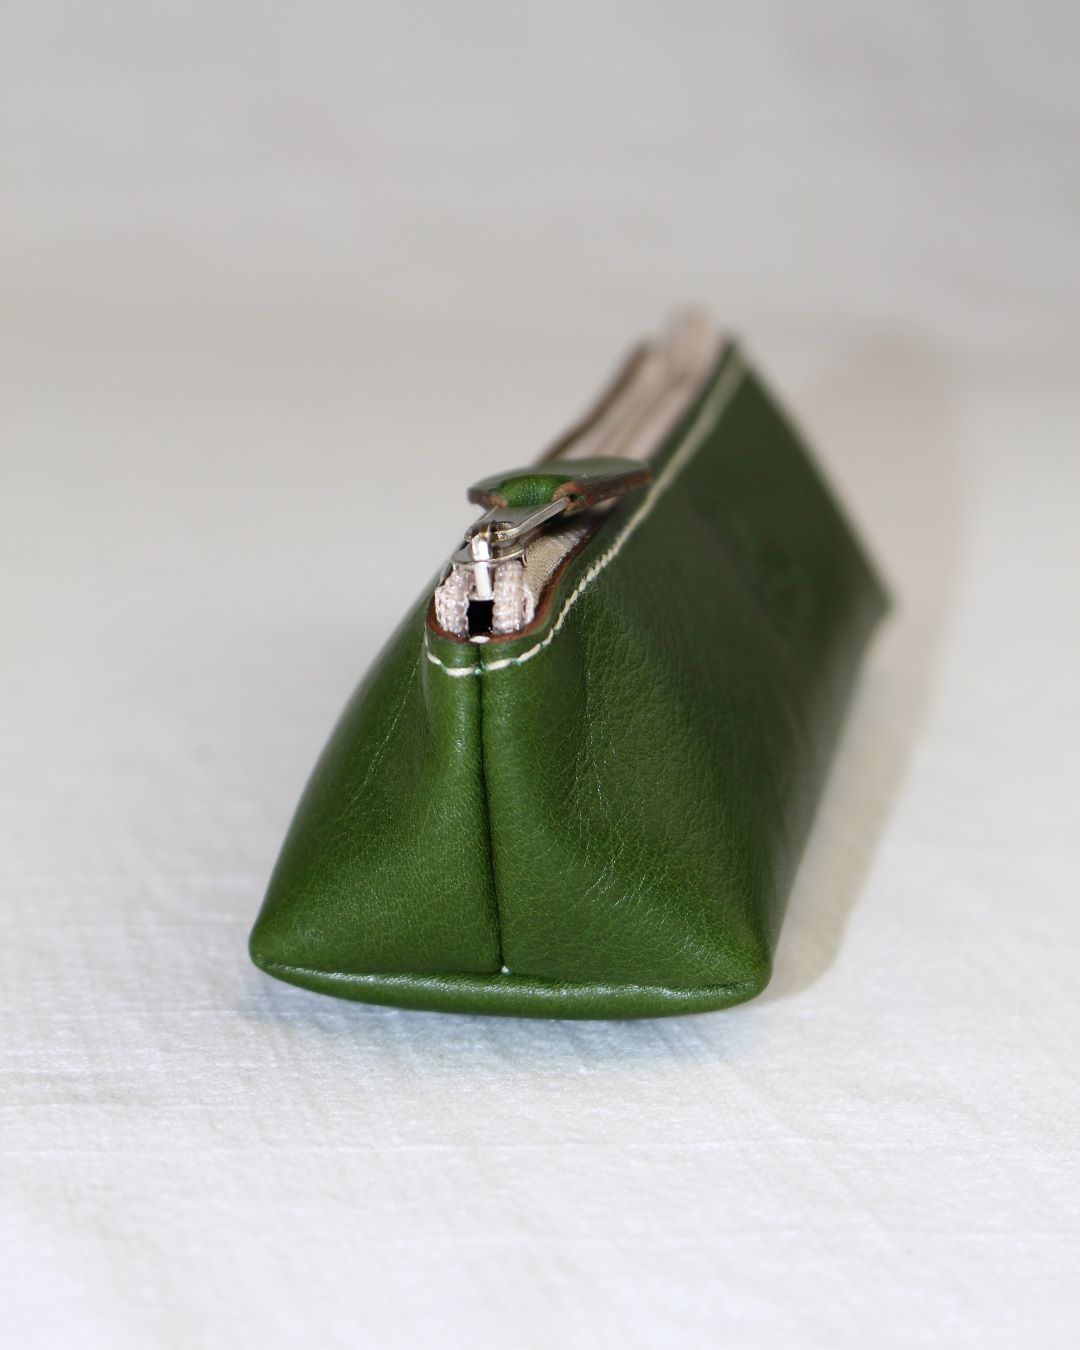 Trousse de sac à main en cuir pour crayons ou maquillage fabriquée en cuir vert à Mornant